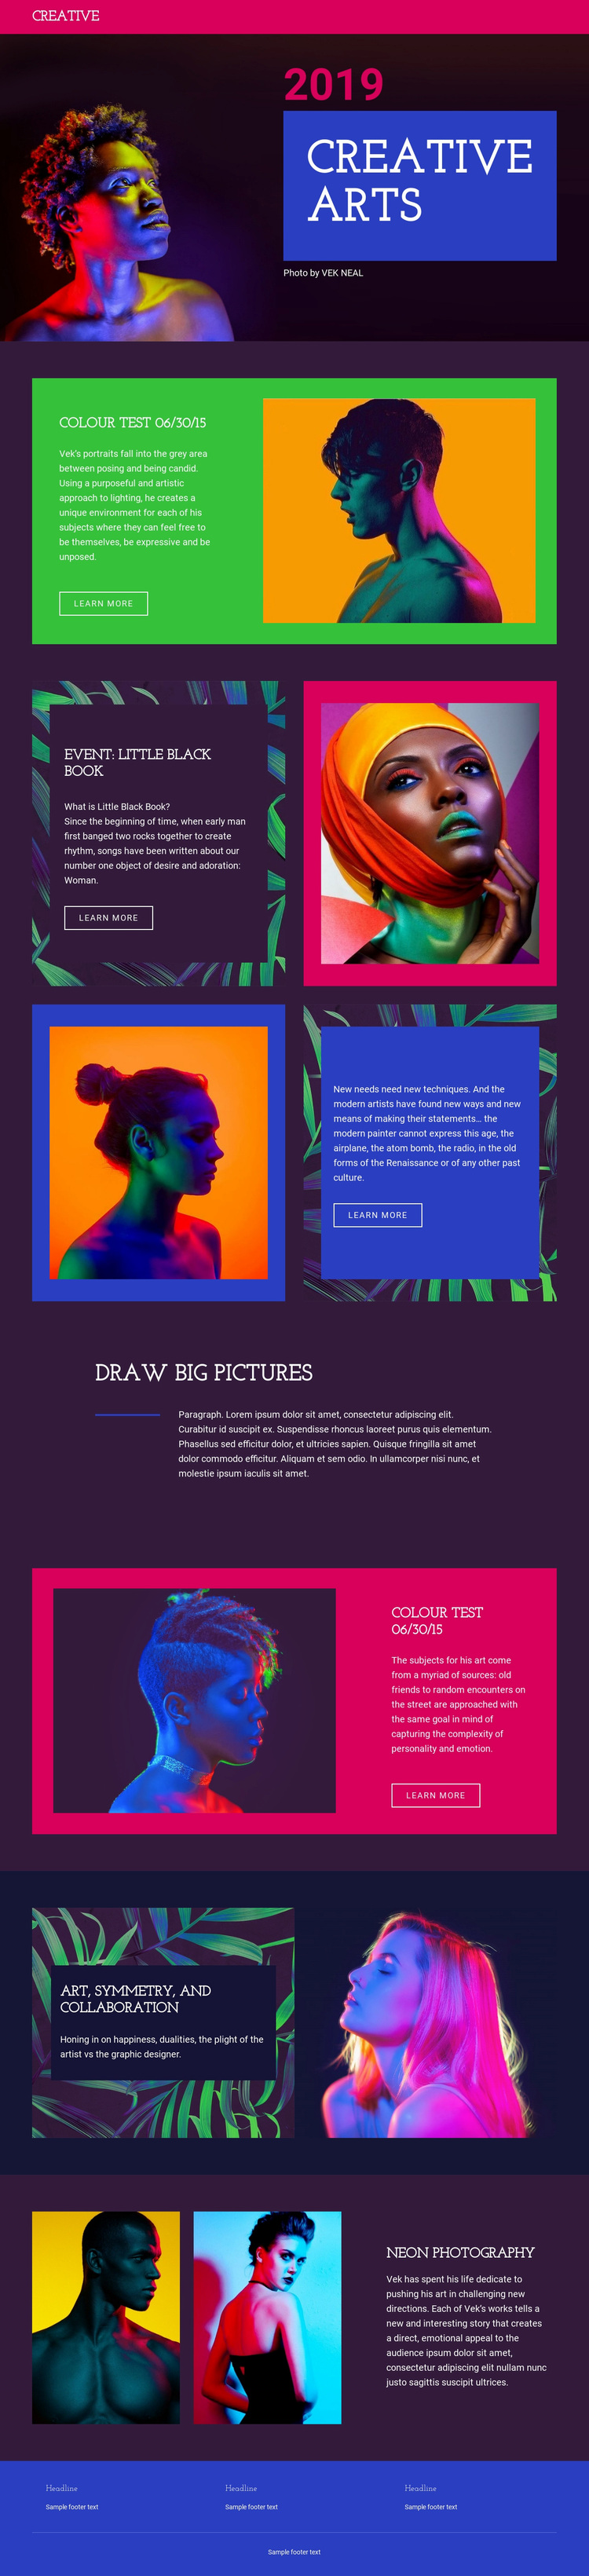 Creative Arts Web Page Designer